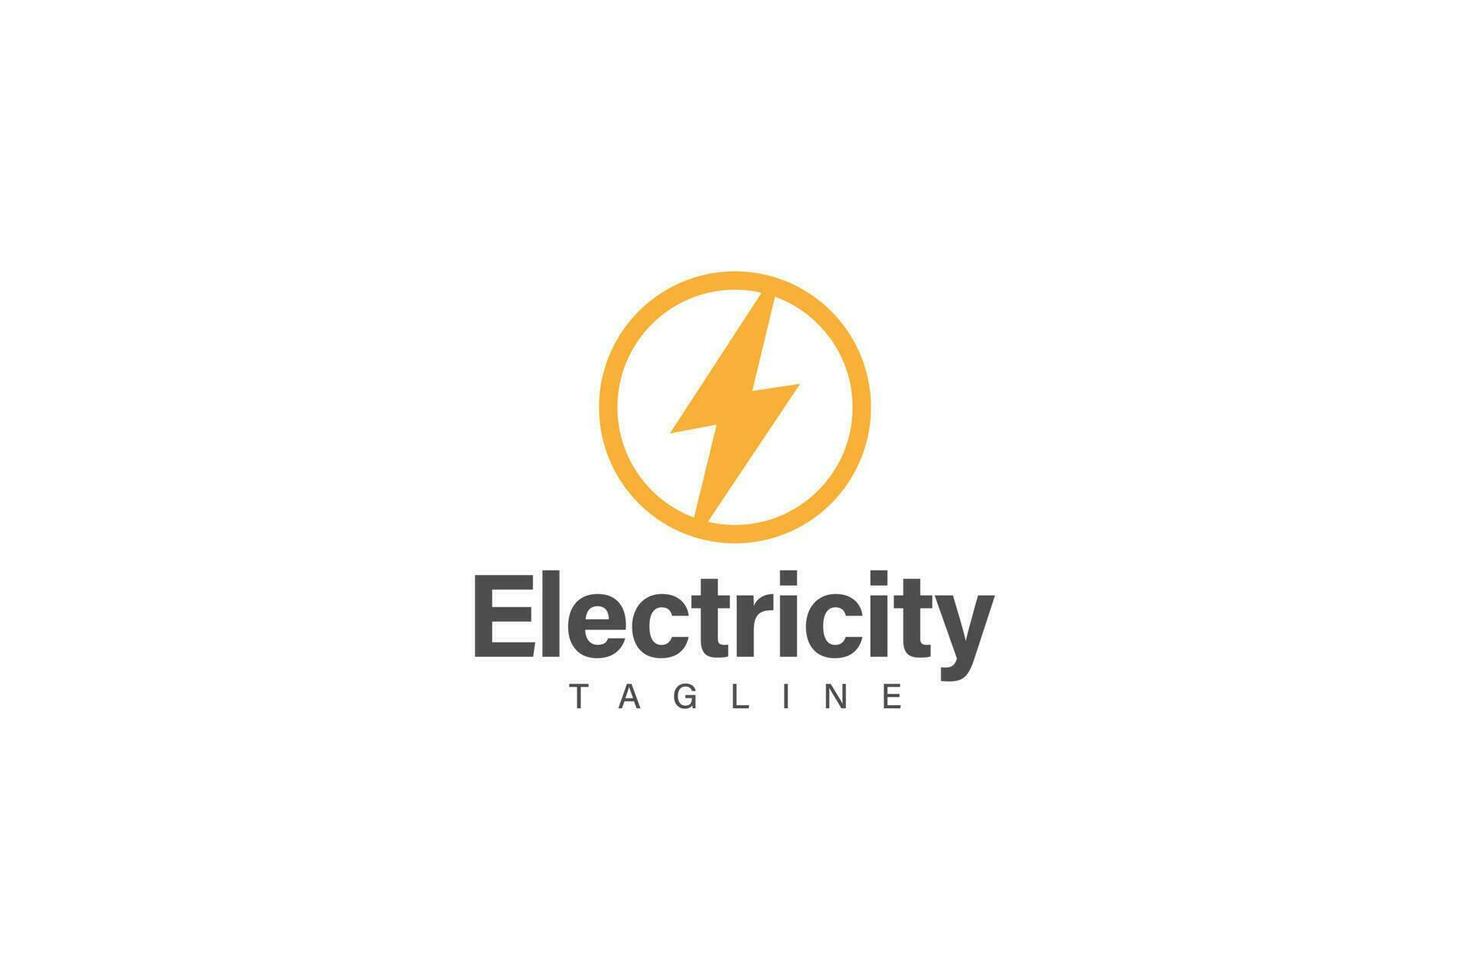 Electricity icon or logo design vector